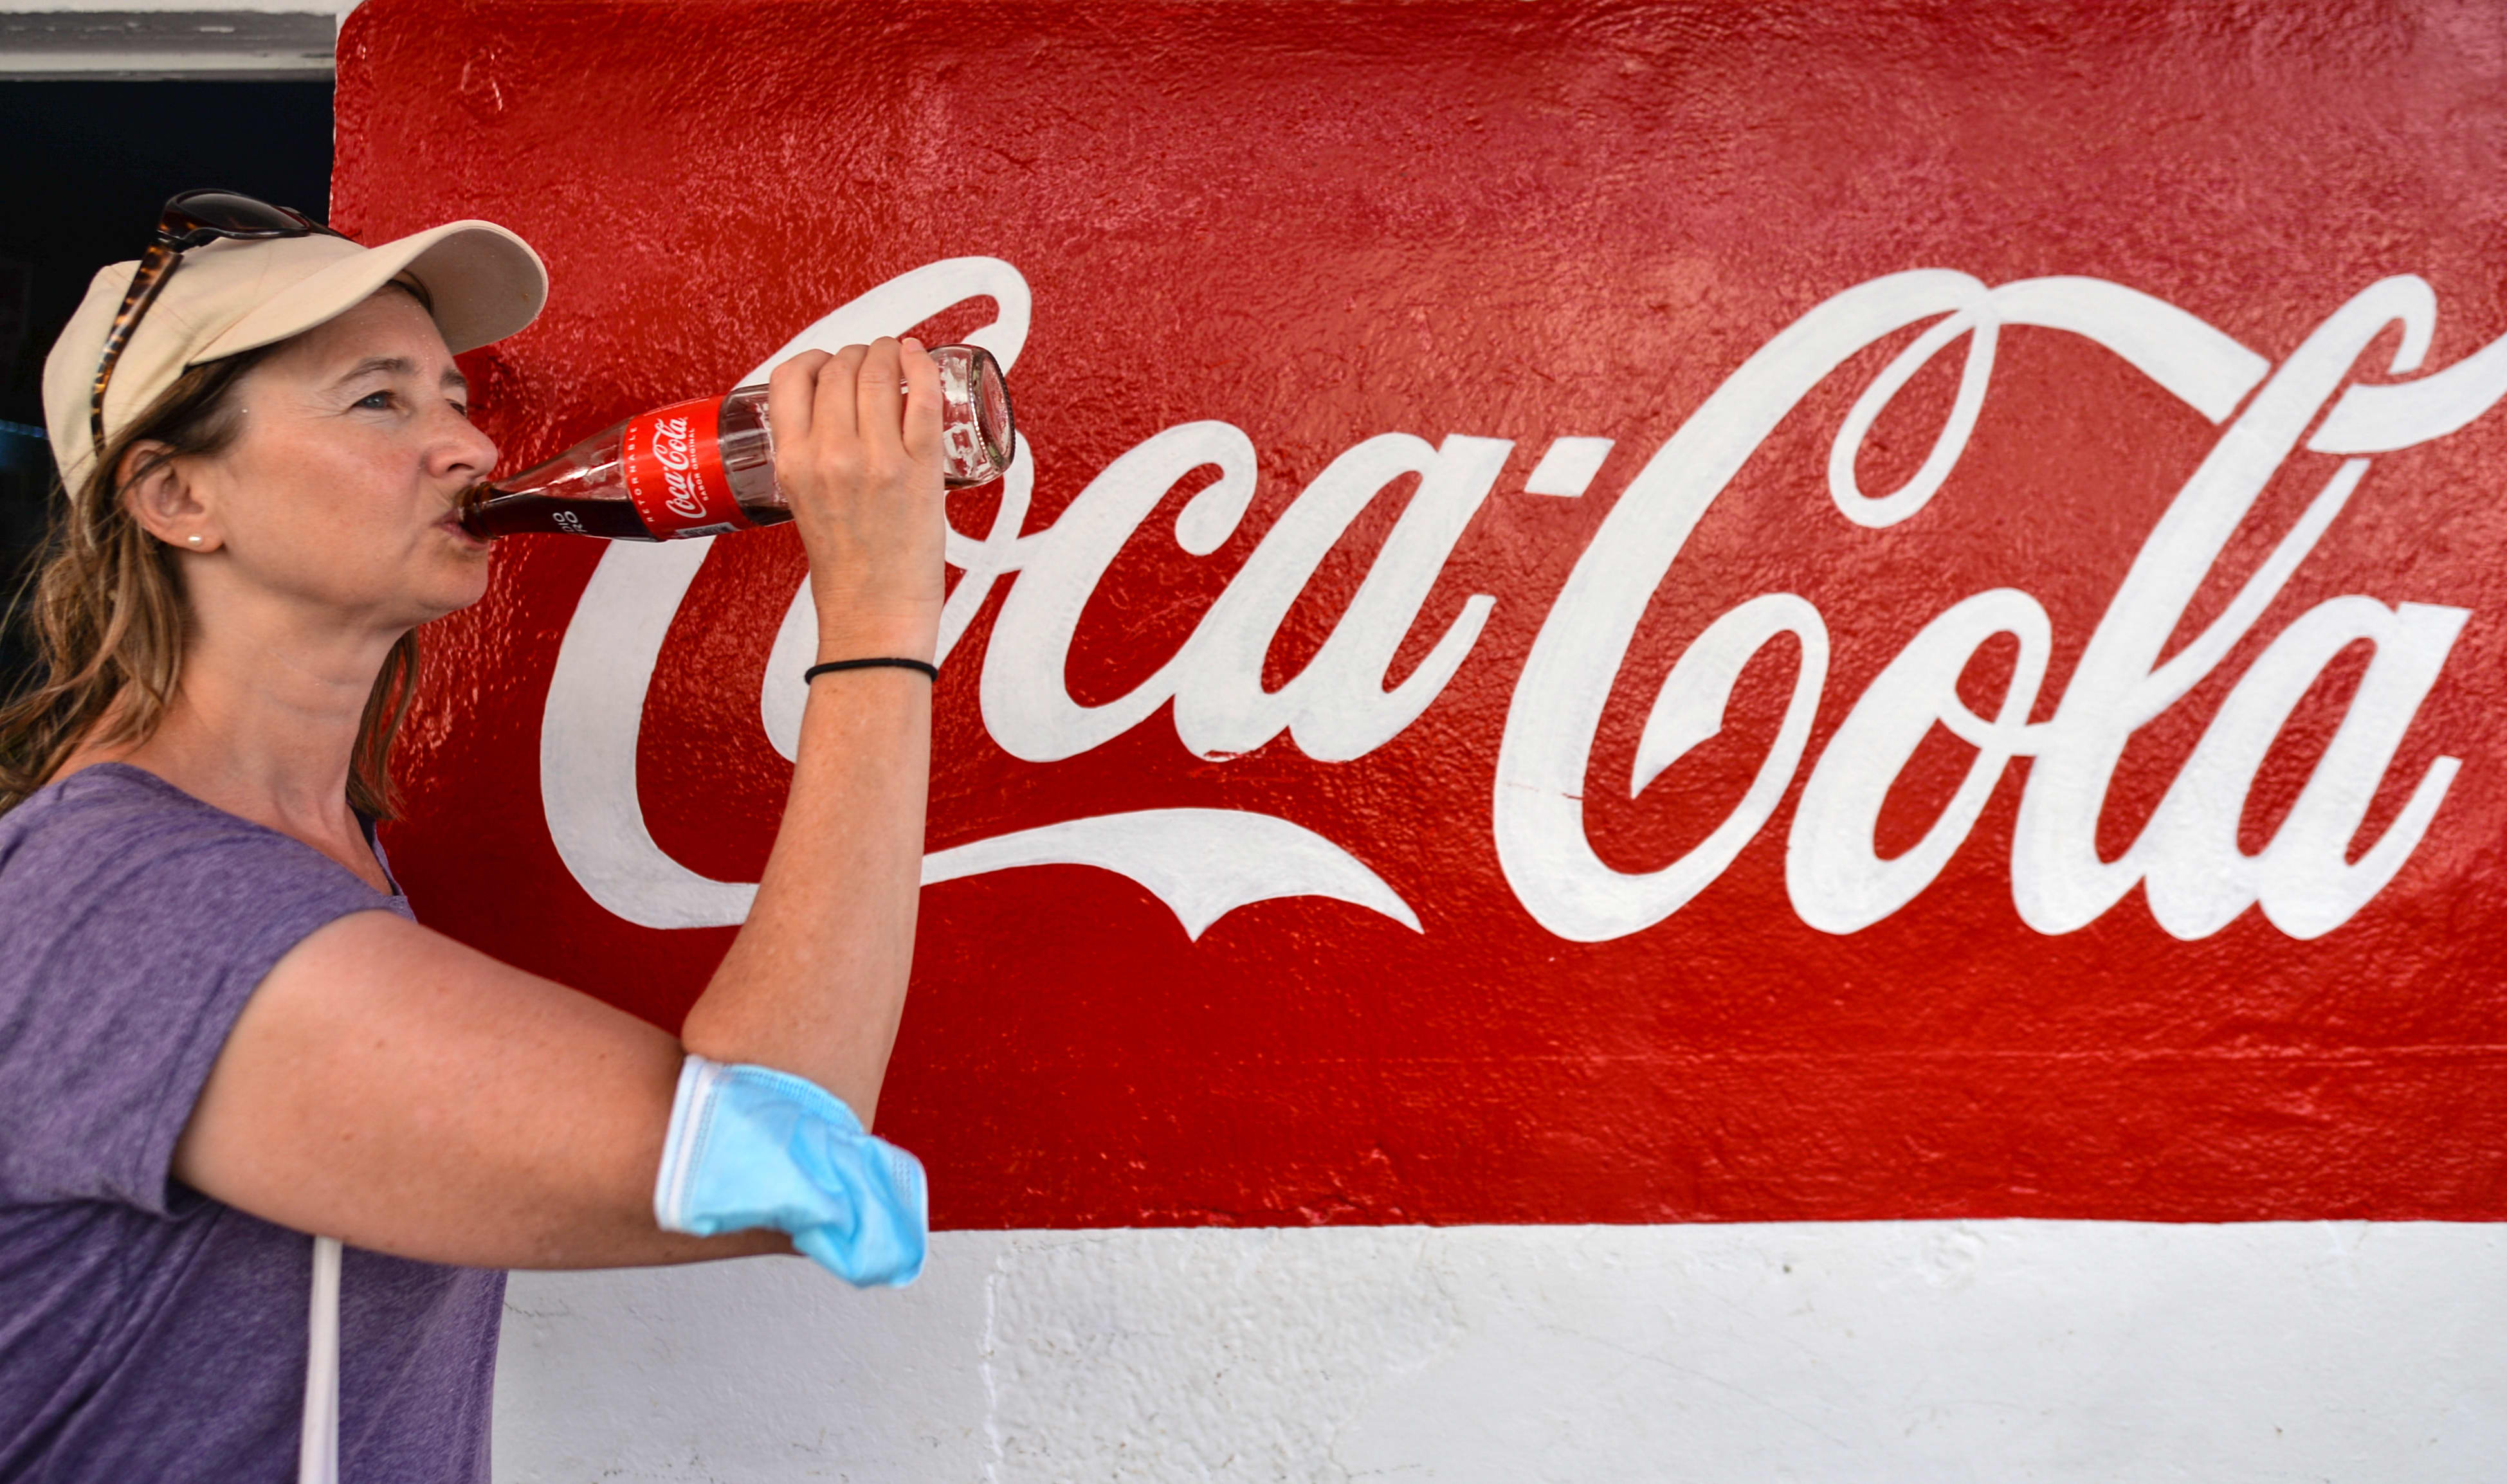 demand of coca cola